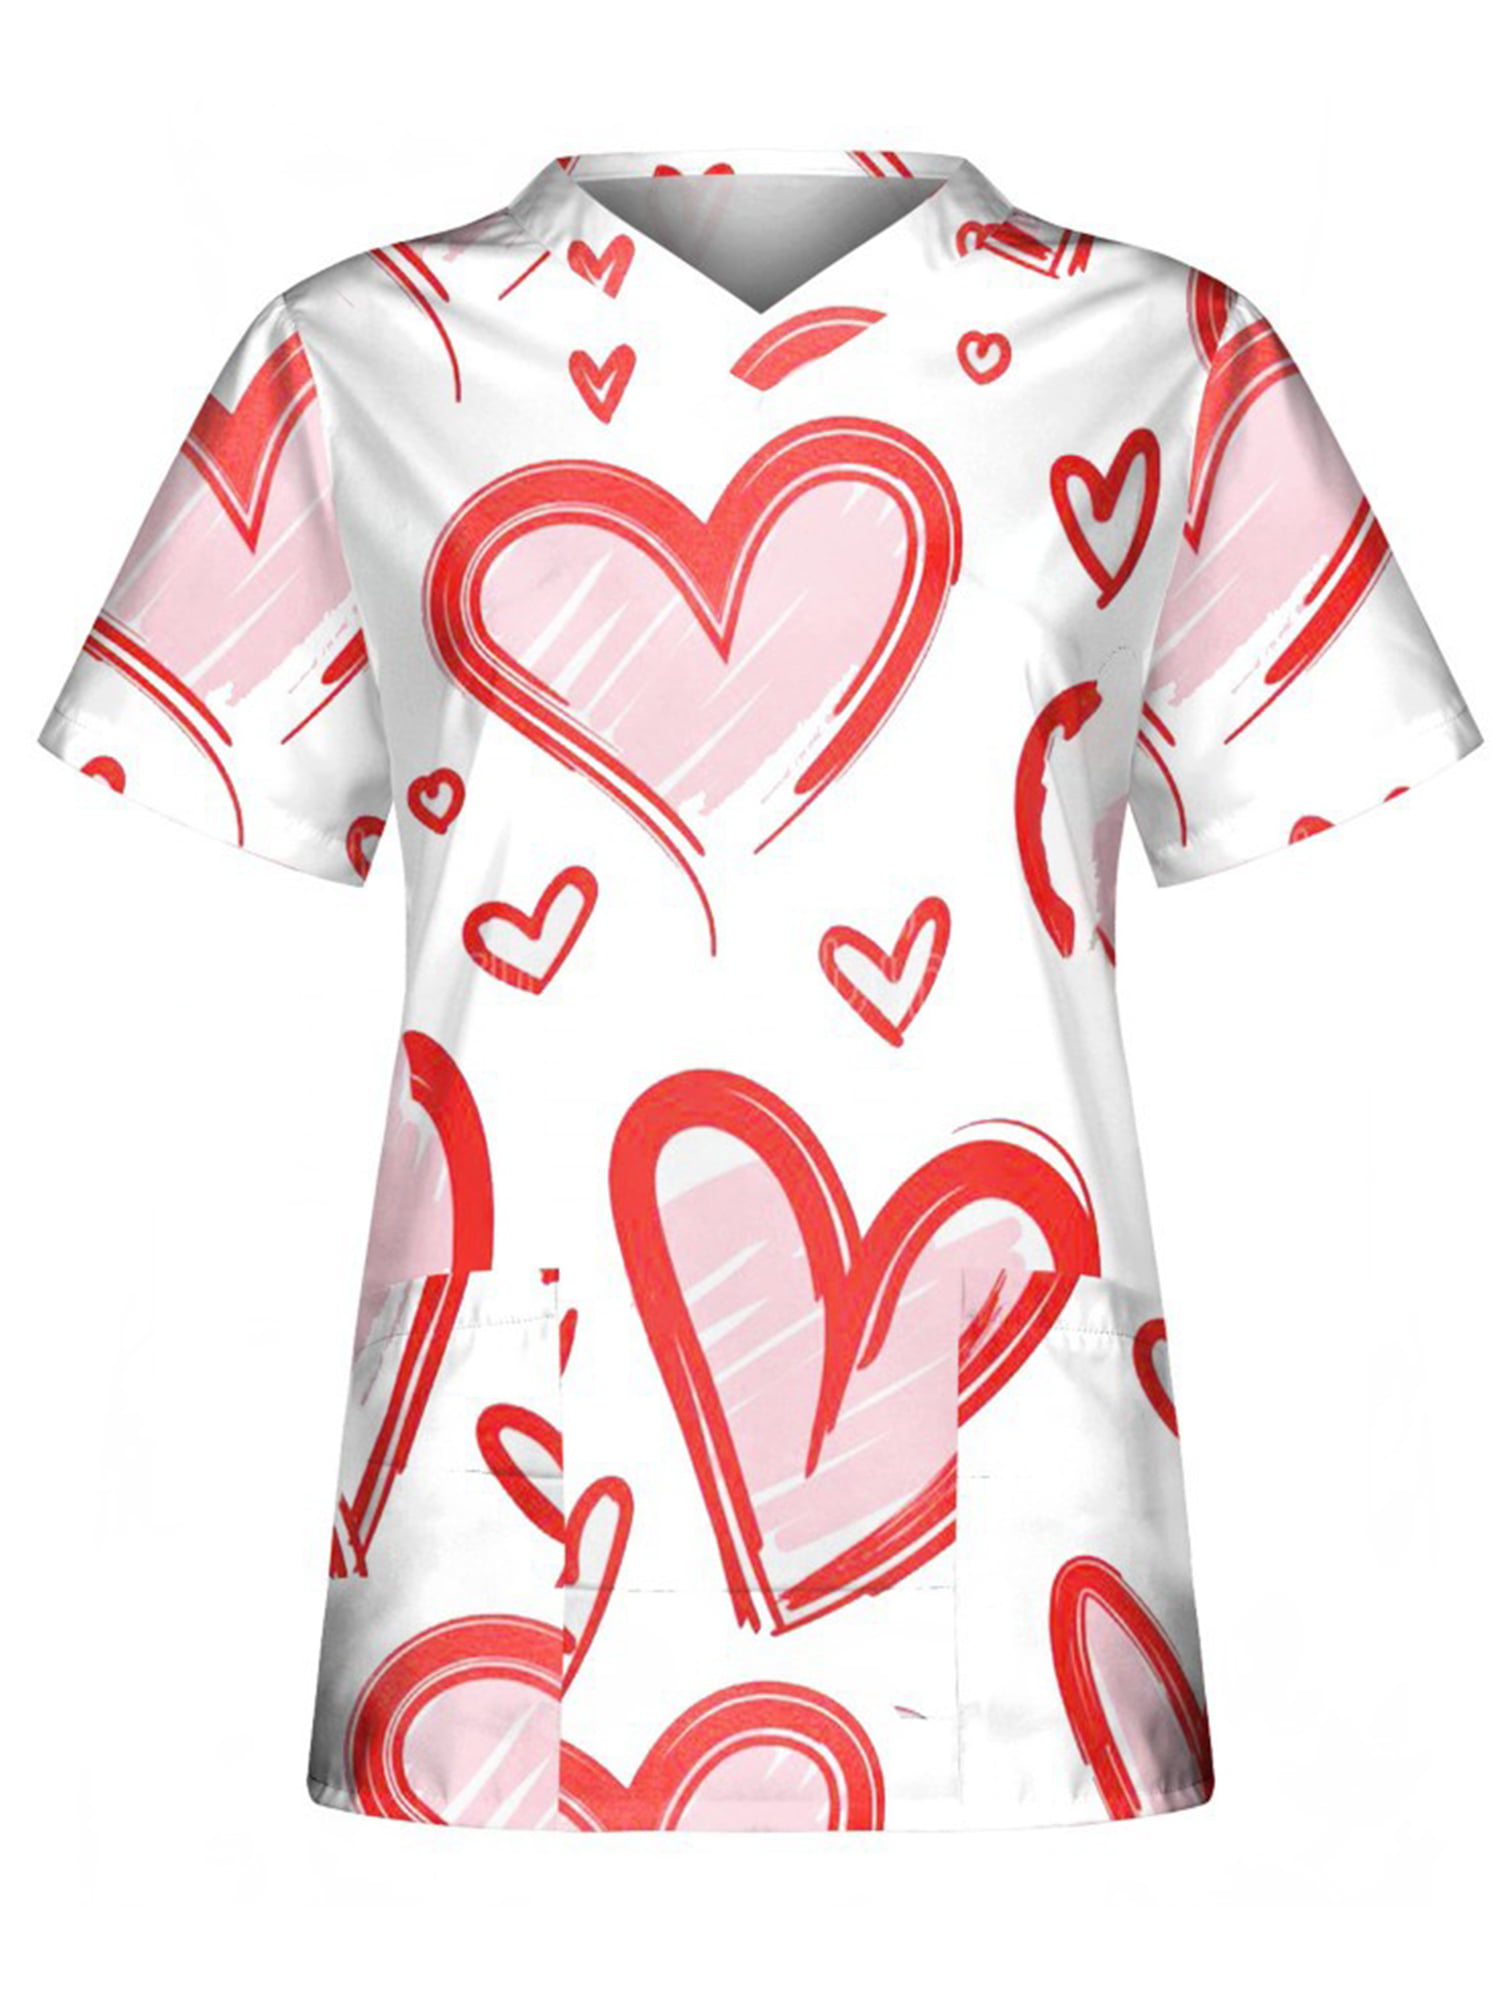 Inevnen Valentine's Day Tops Women Nurse Working Uniforms Love Heart V ...